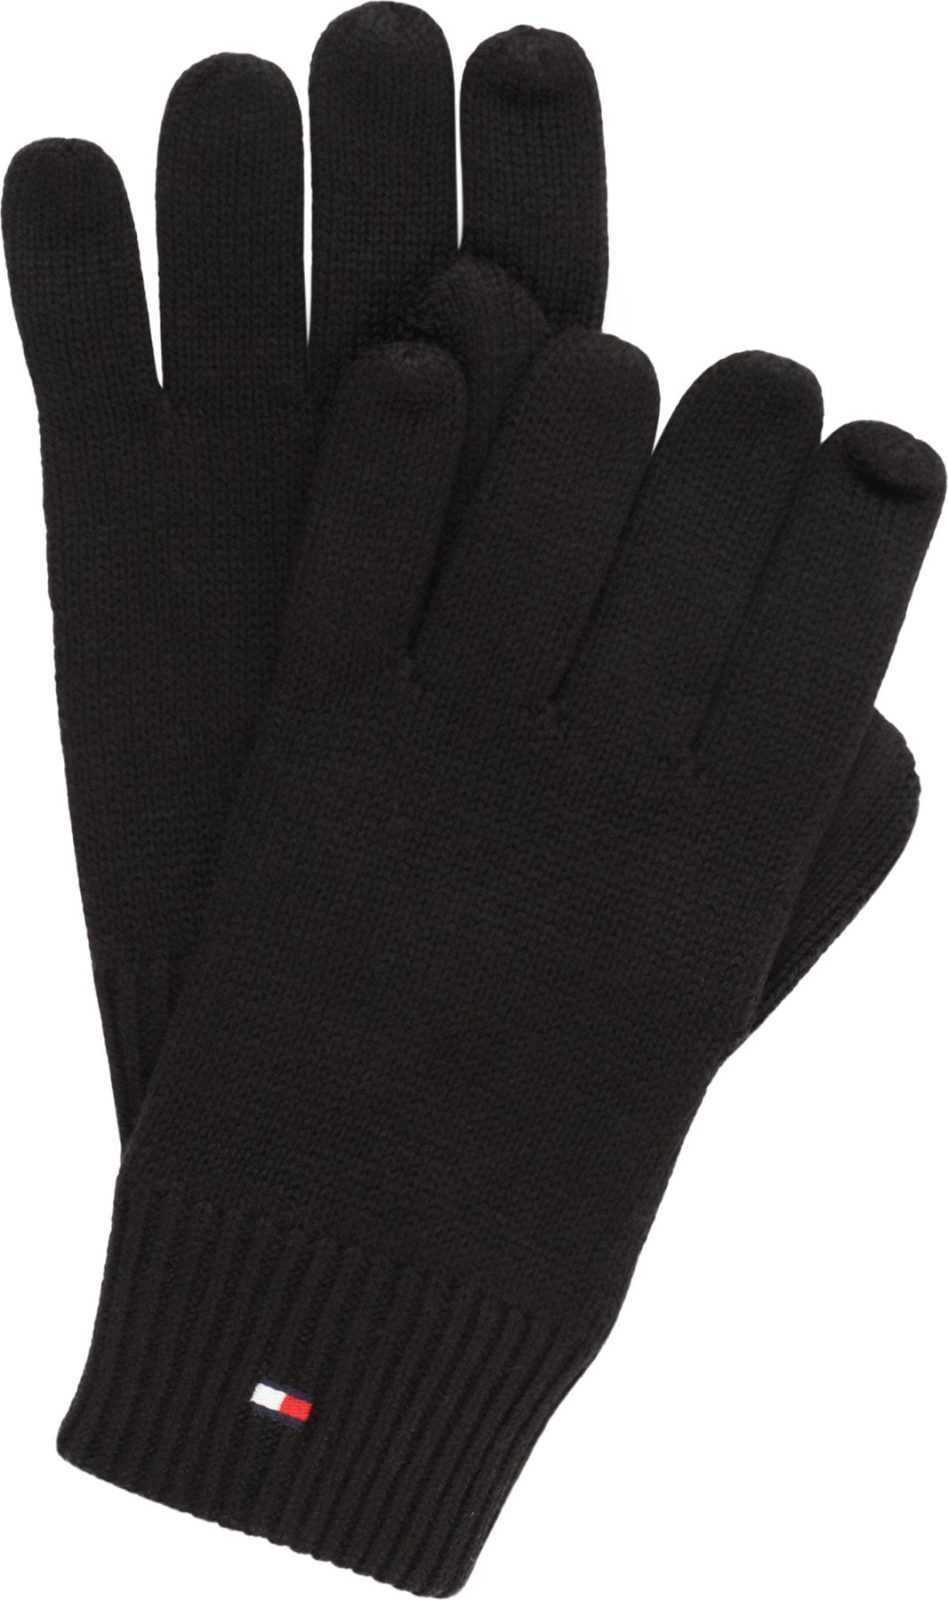 TOMMY HILFIGER Prstové rukavice černá